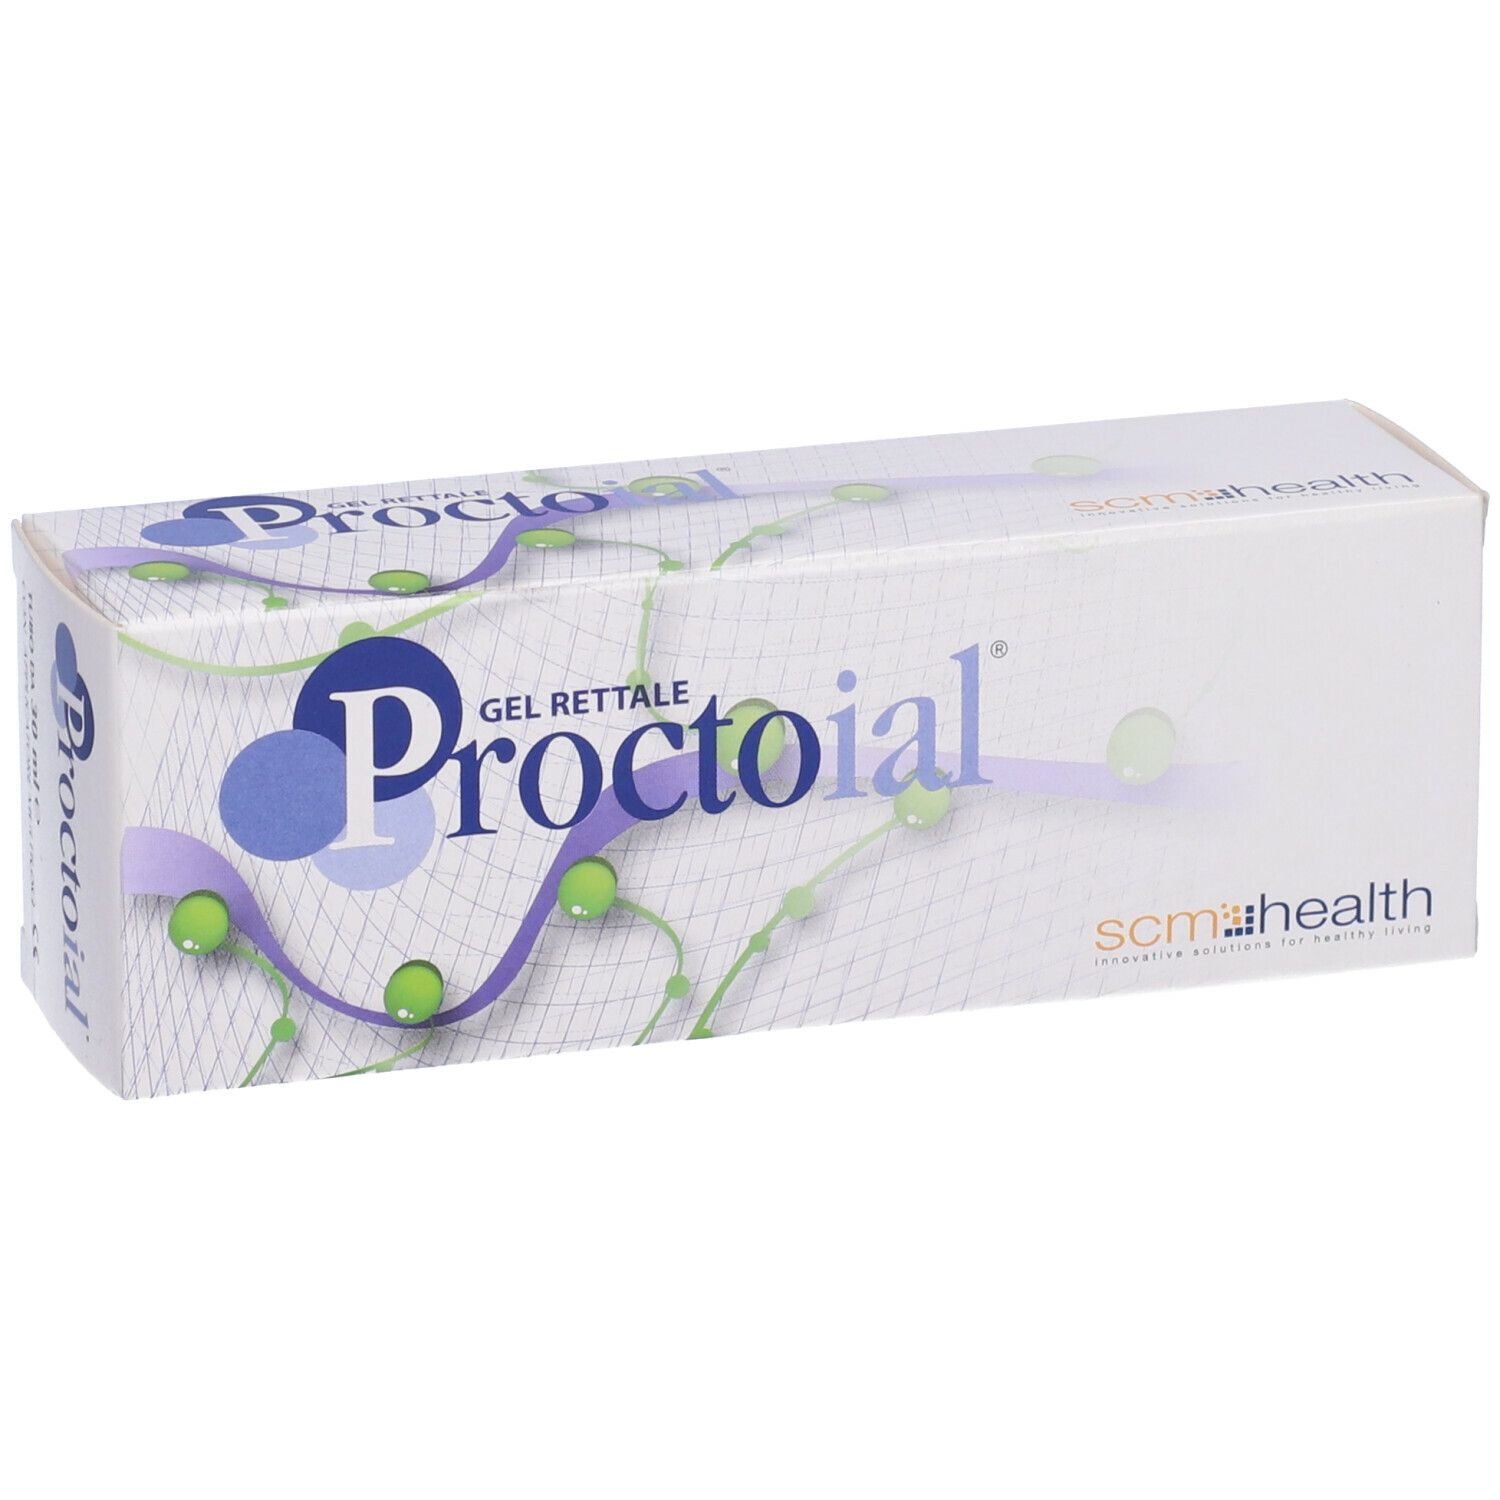 Proctoial® Gel Rettale